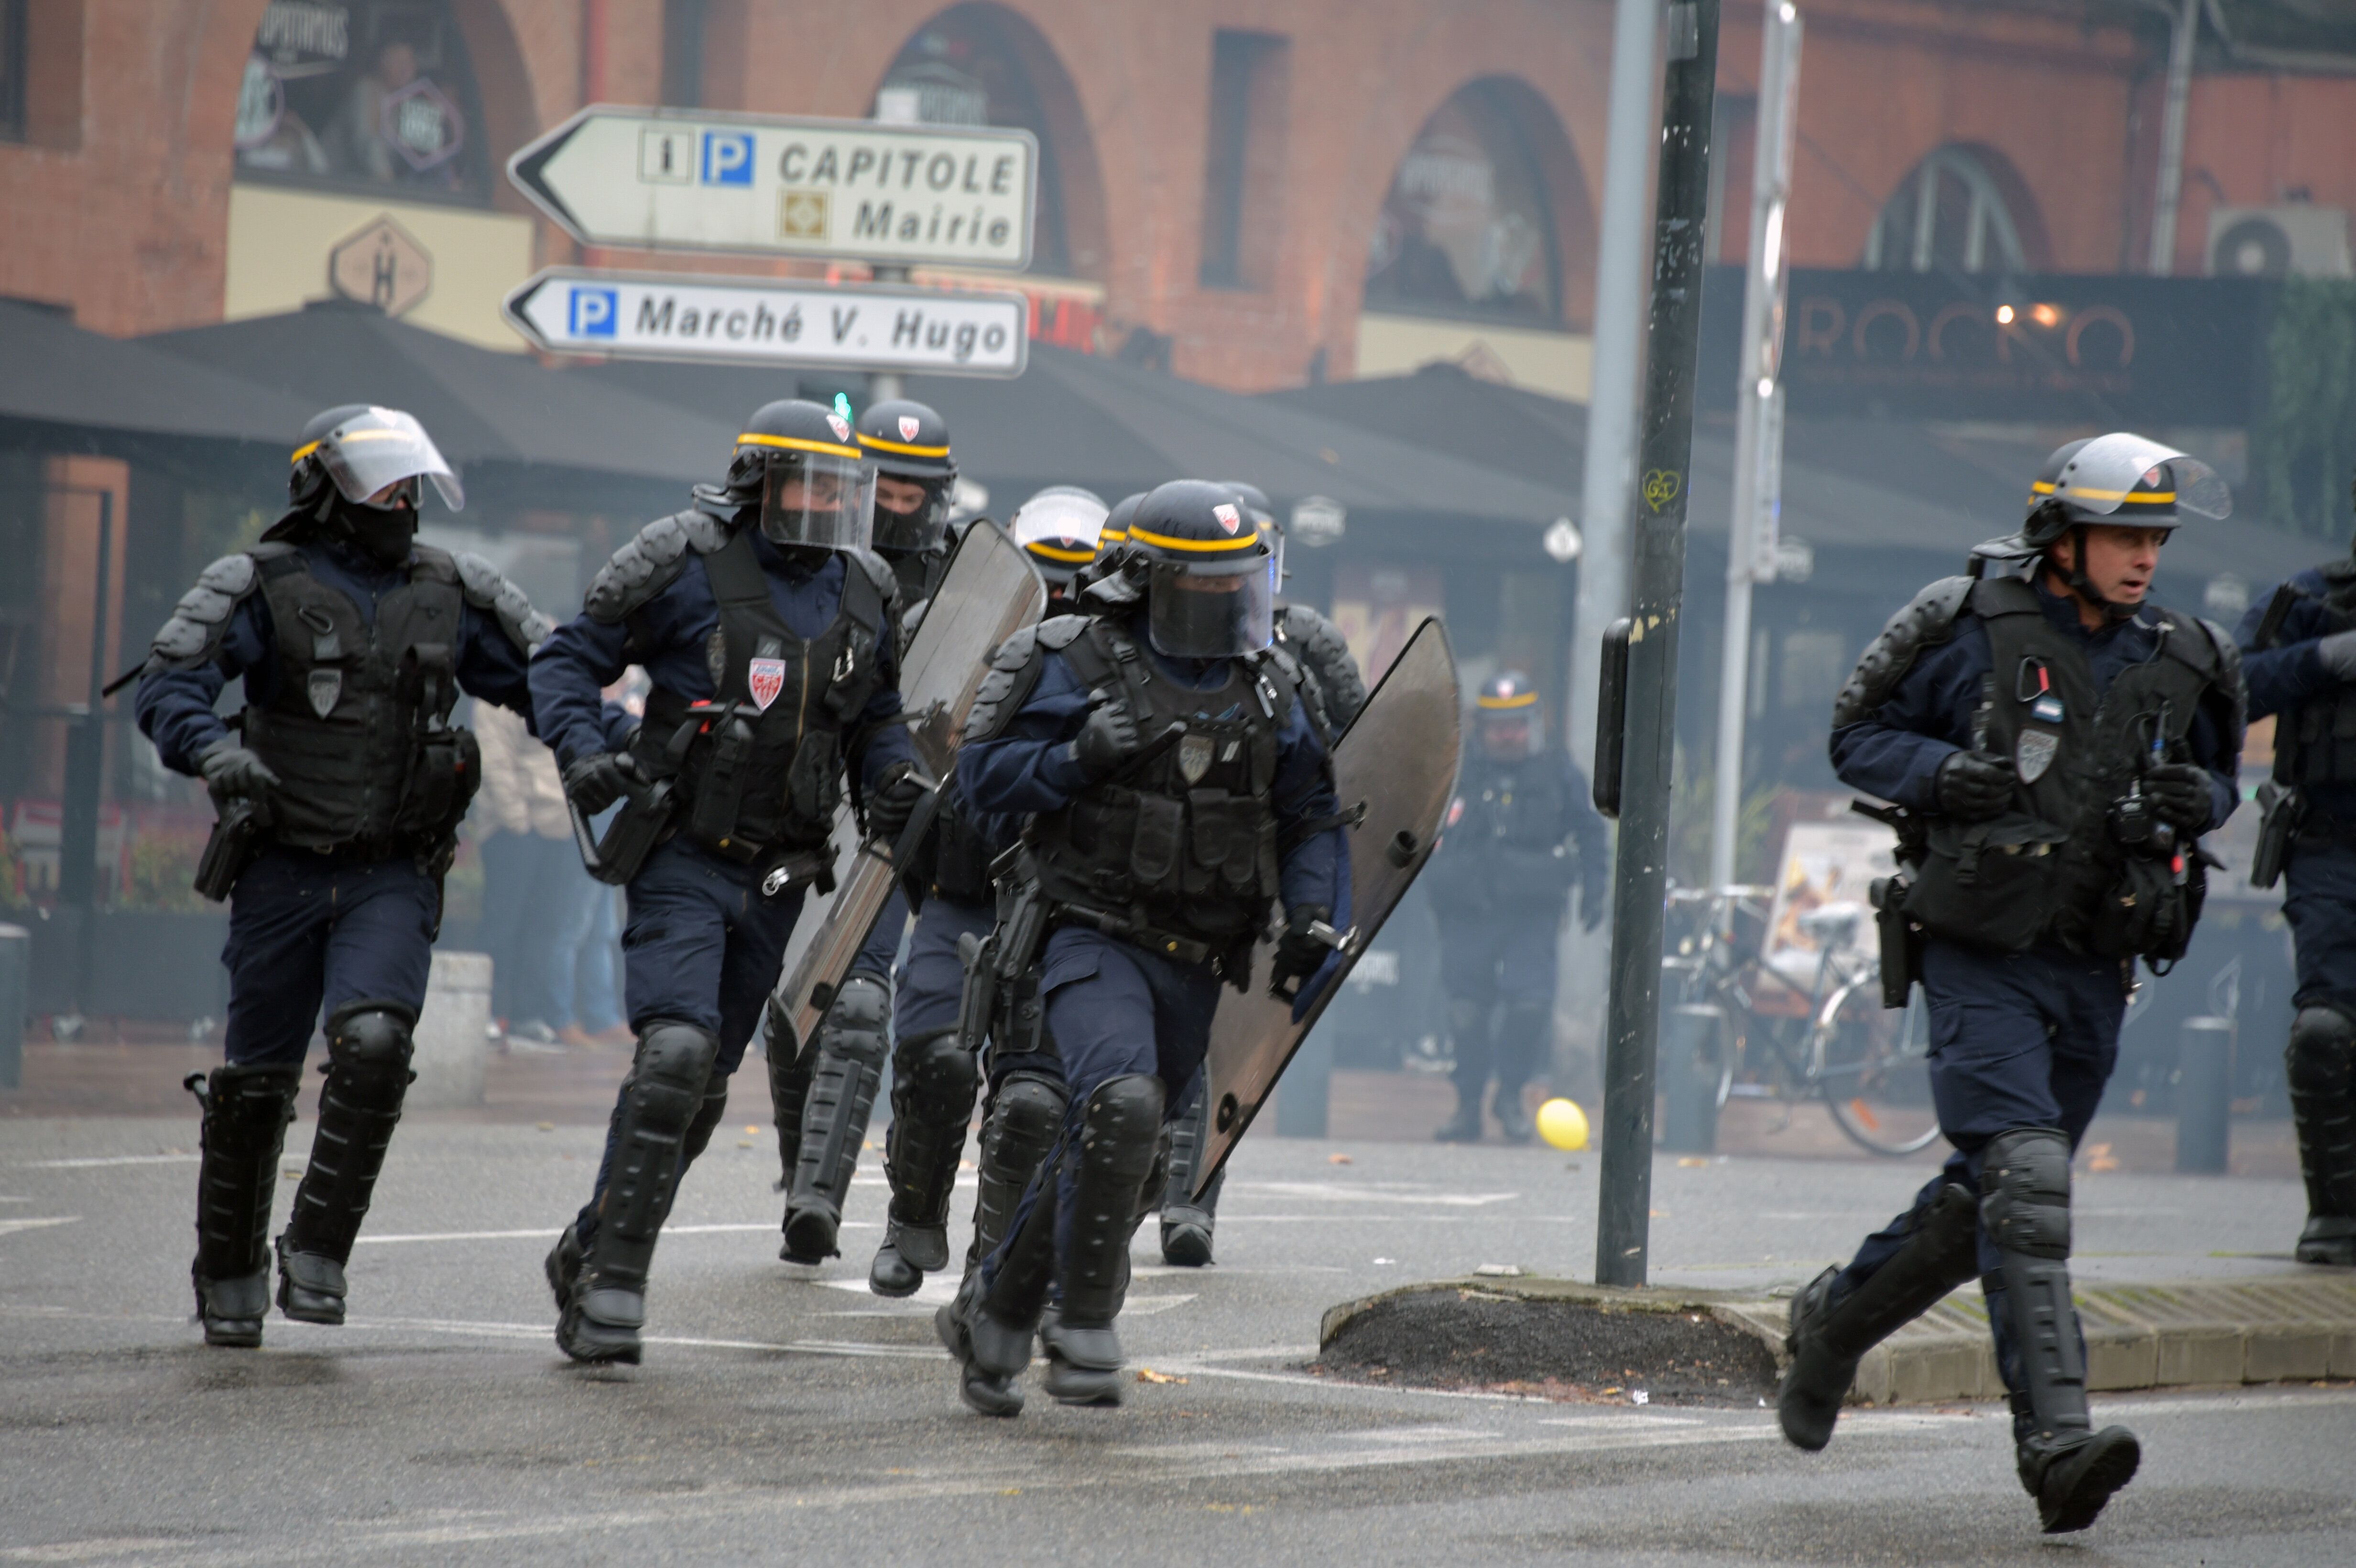 Des policiers à Toulouse lors d'une manifestation des gilets jaunes en novembre 2019 (image